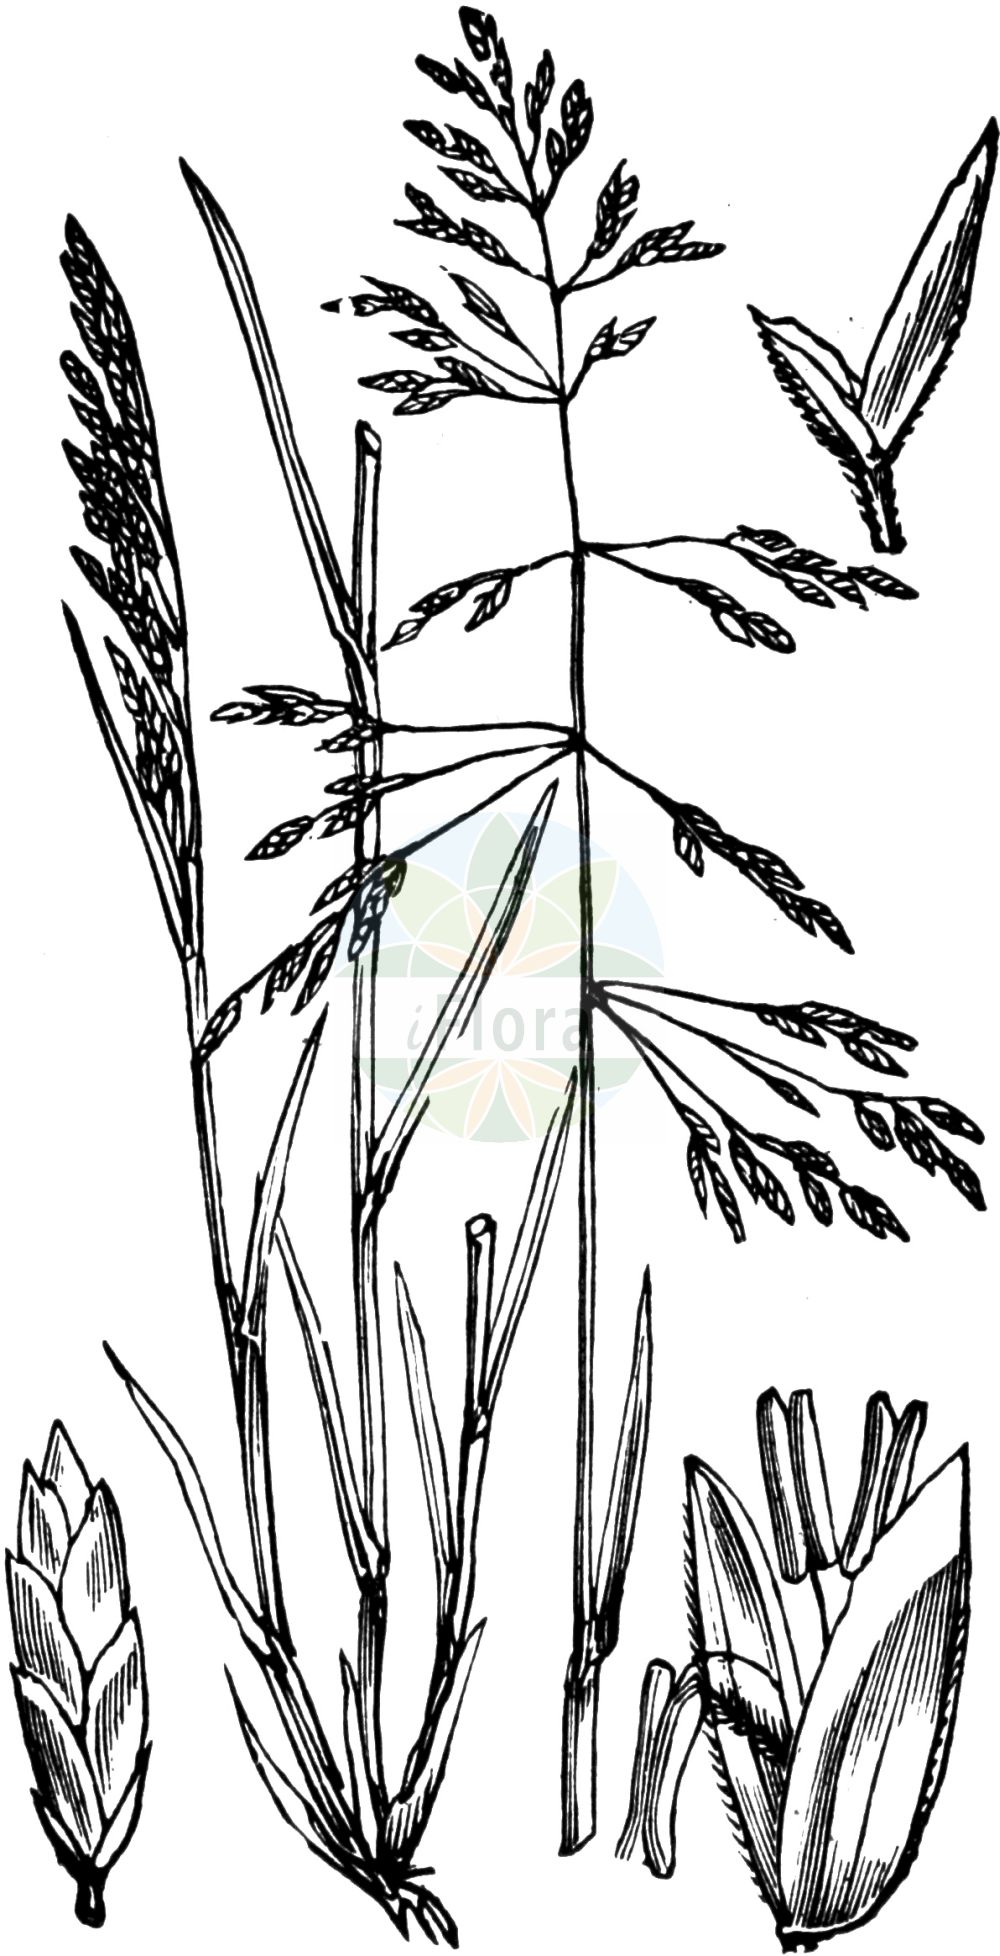 Historische Abbildung von Puccinellia distans (Gewöhnlicher Salzschwaden - Reflexed Saltmarsh-grass). Das Bild zeigt Blatt, Bluete, Frucht und Same. ---- Historical Drawing of Puccinellia distans (Gewöhnlicher Salzschwaden - Reflexed Saltmarsh-grass). The image is showing leaf, flower, fruit and seed.(Puccinellia distans,Gewöhnlicher Salzschwaden,Reflexed Saltmarsh-grass,Atropis distans,Atropis pseudoconvoluta,Glyceria distans,Poa distans,Poa retroflexa,Puccinellia distans,Puccinellia retroflexa,Gewoehnlicher Salzschwaden,Salzschwaden,Reflexed Saltmarsh-grass,Puccinellia,Salzschwaden,Alkaligrass,Poaceae,Süßgräser,Grass family,Blatt,Bluete,Frucht,Same,leaf,flower,fruit,seed,Fitch et al. (1880))